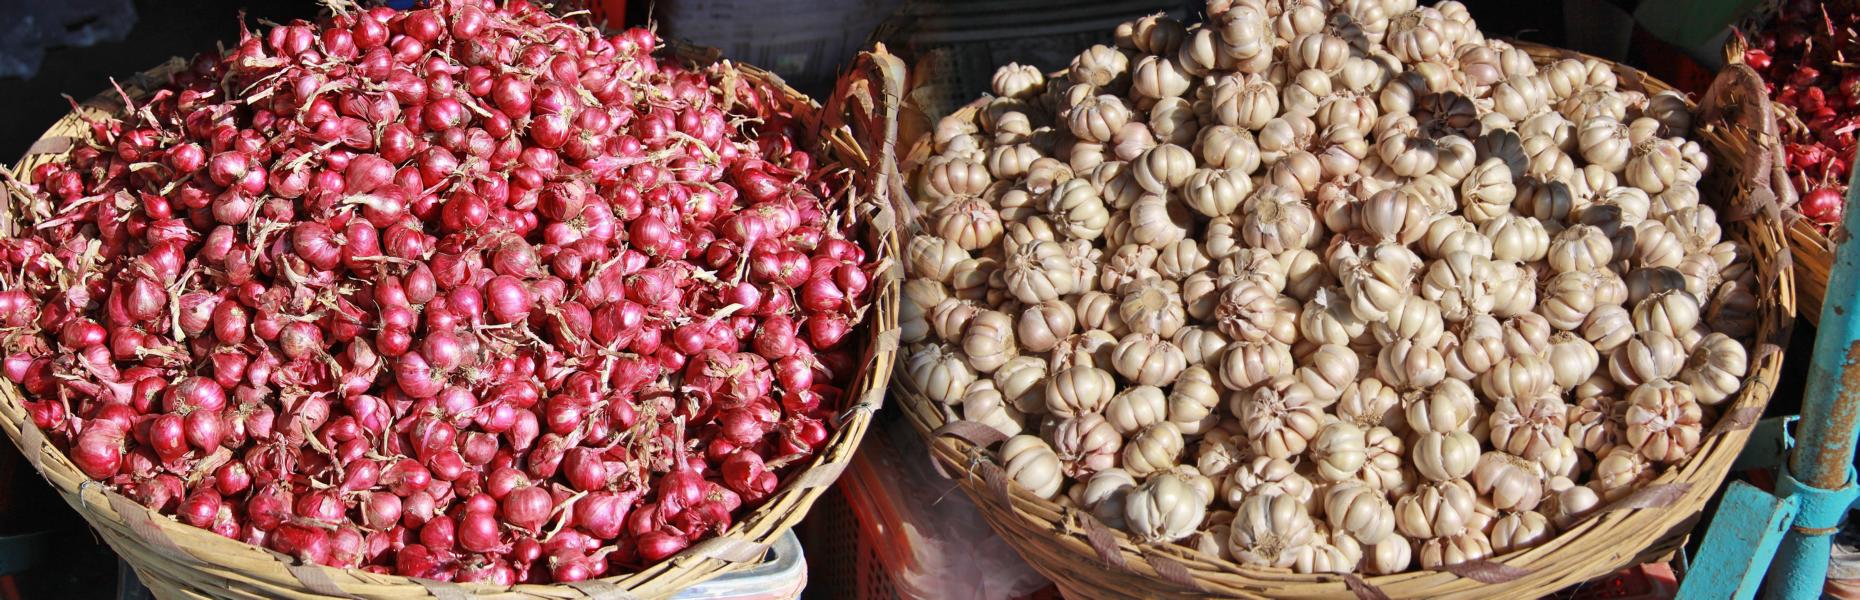 Zwiebeln und Knoblauch sind ein Gewürz, das auch in Kambodscha viel genutzt wird.